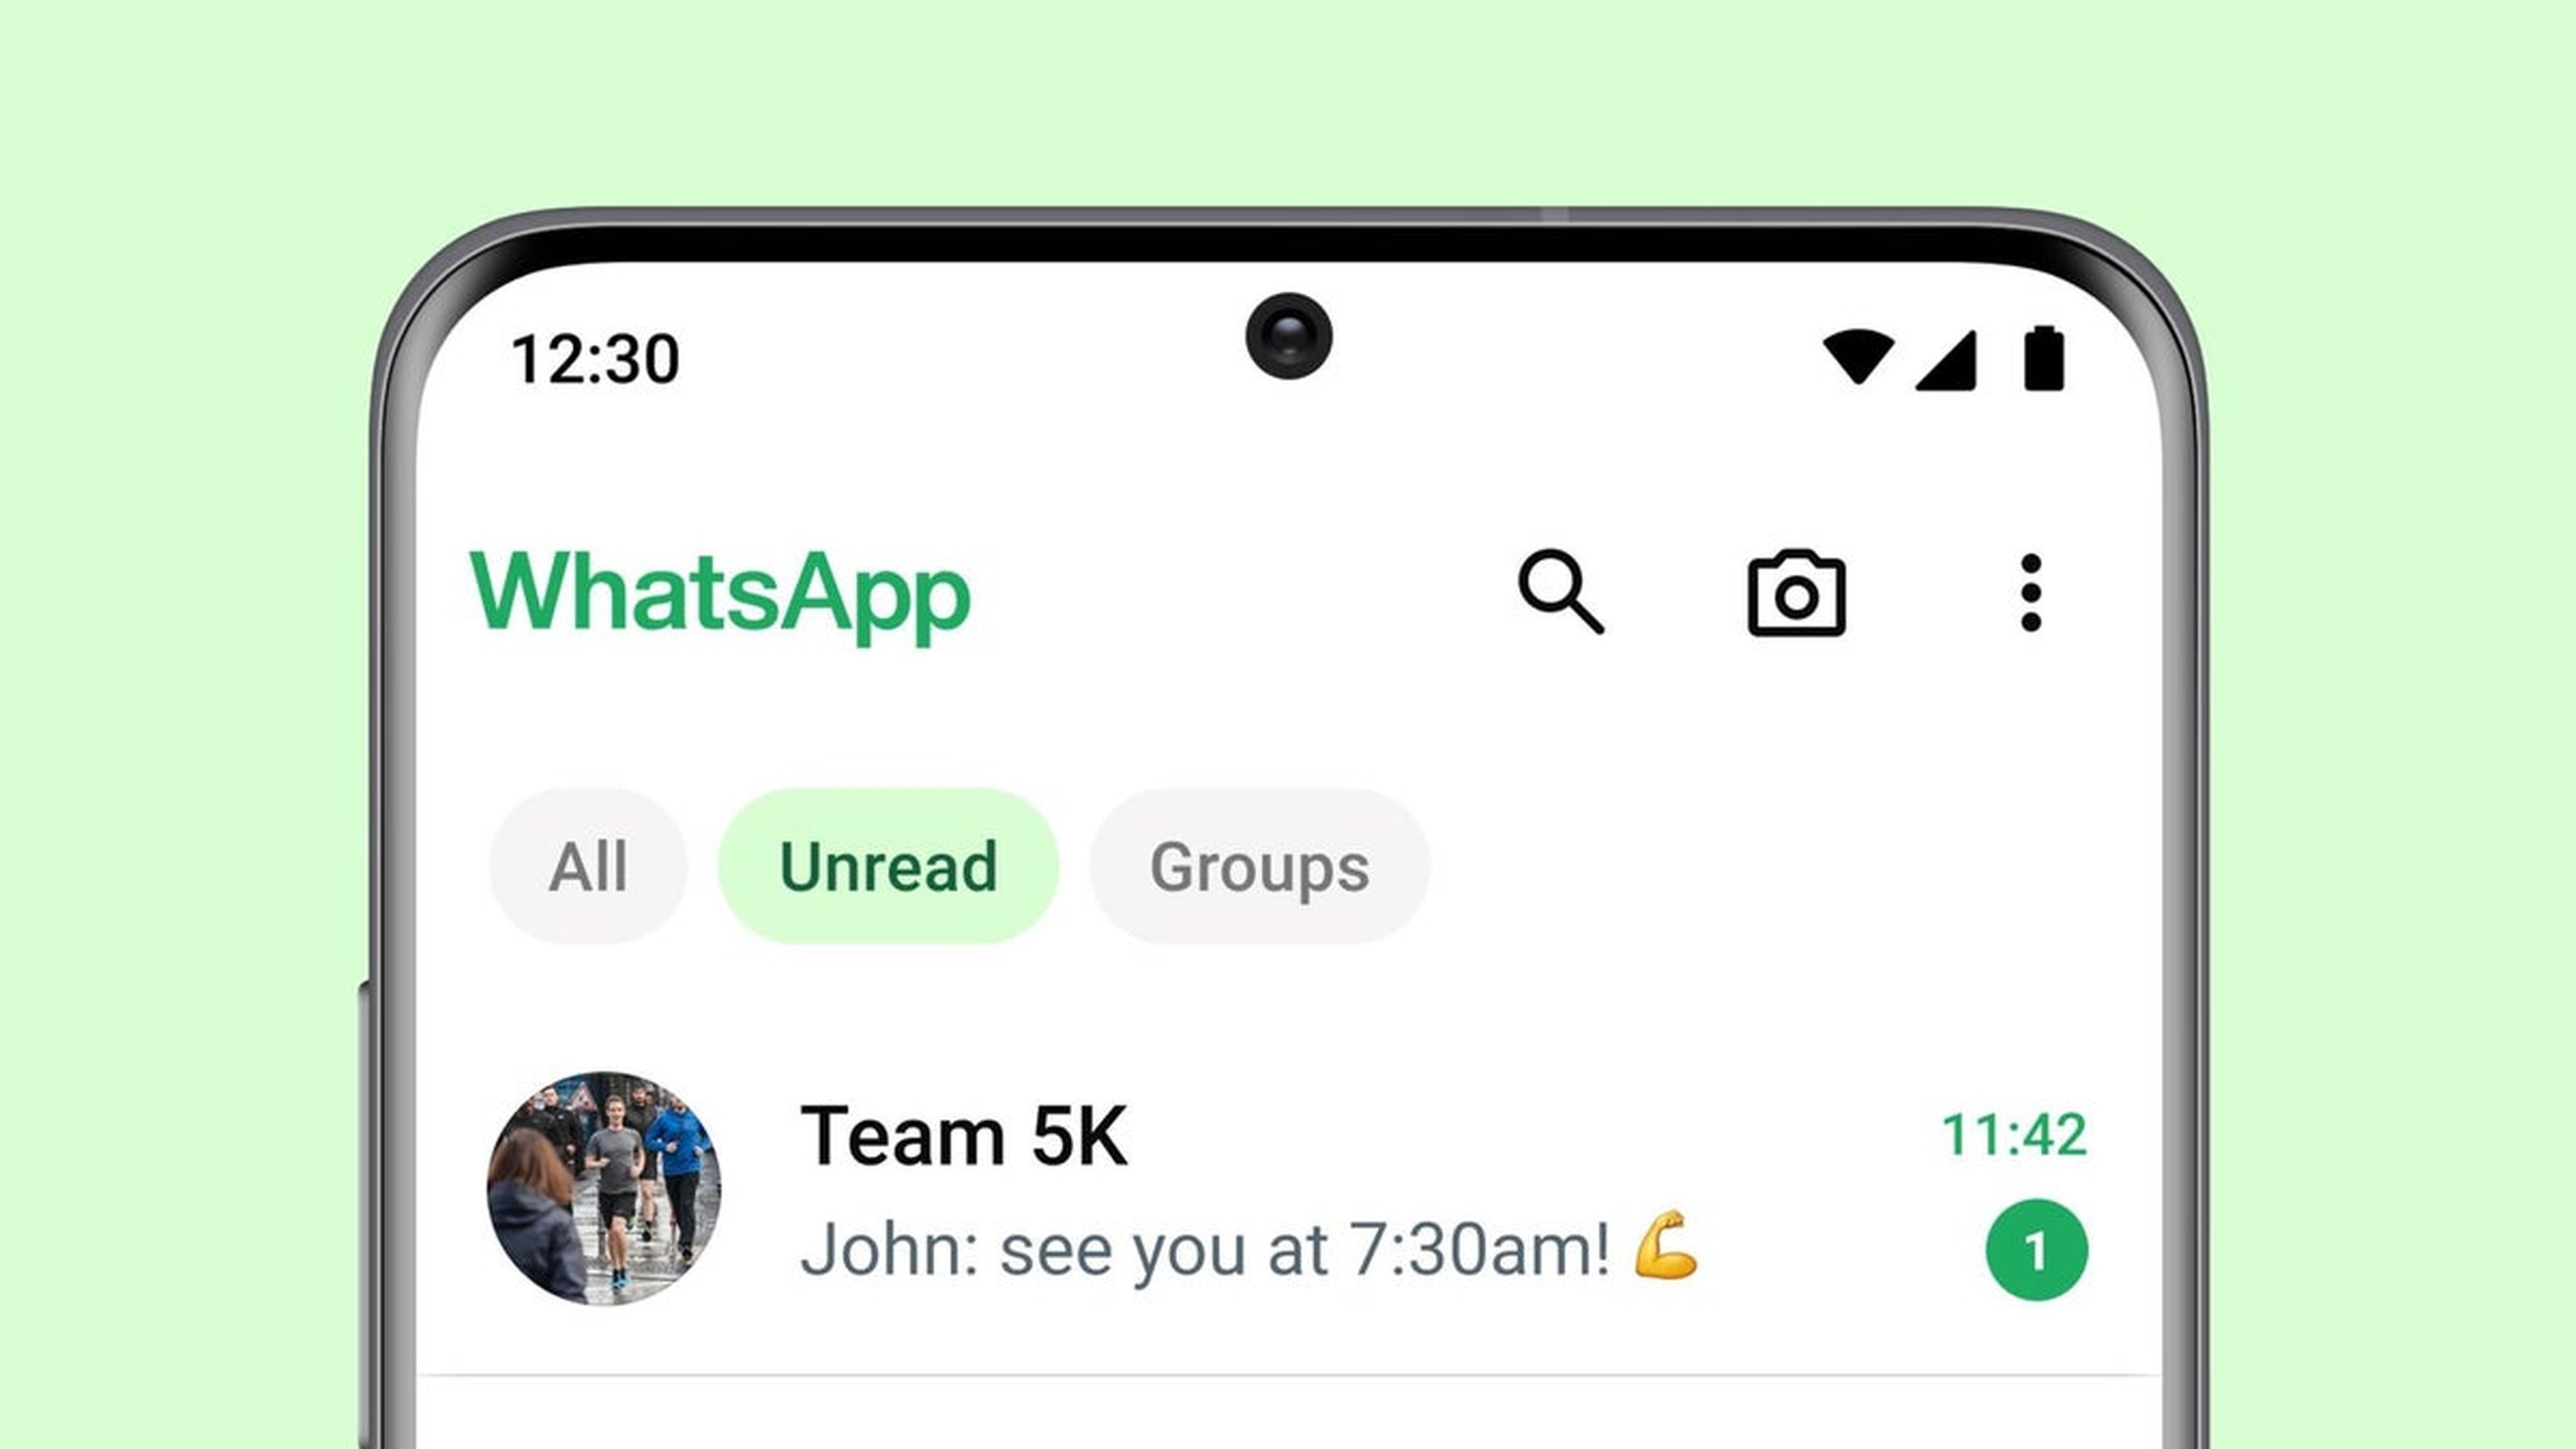 WhatsApp permitirá filtrar los chats individuales y grupales para organizar los mensajes no leídos